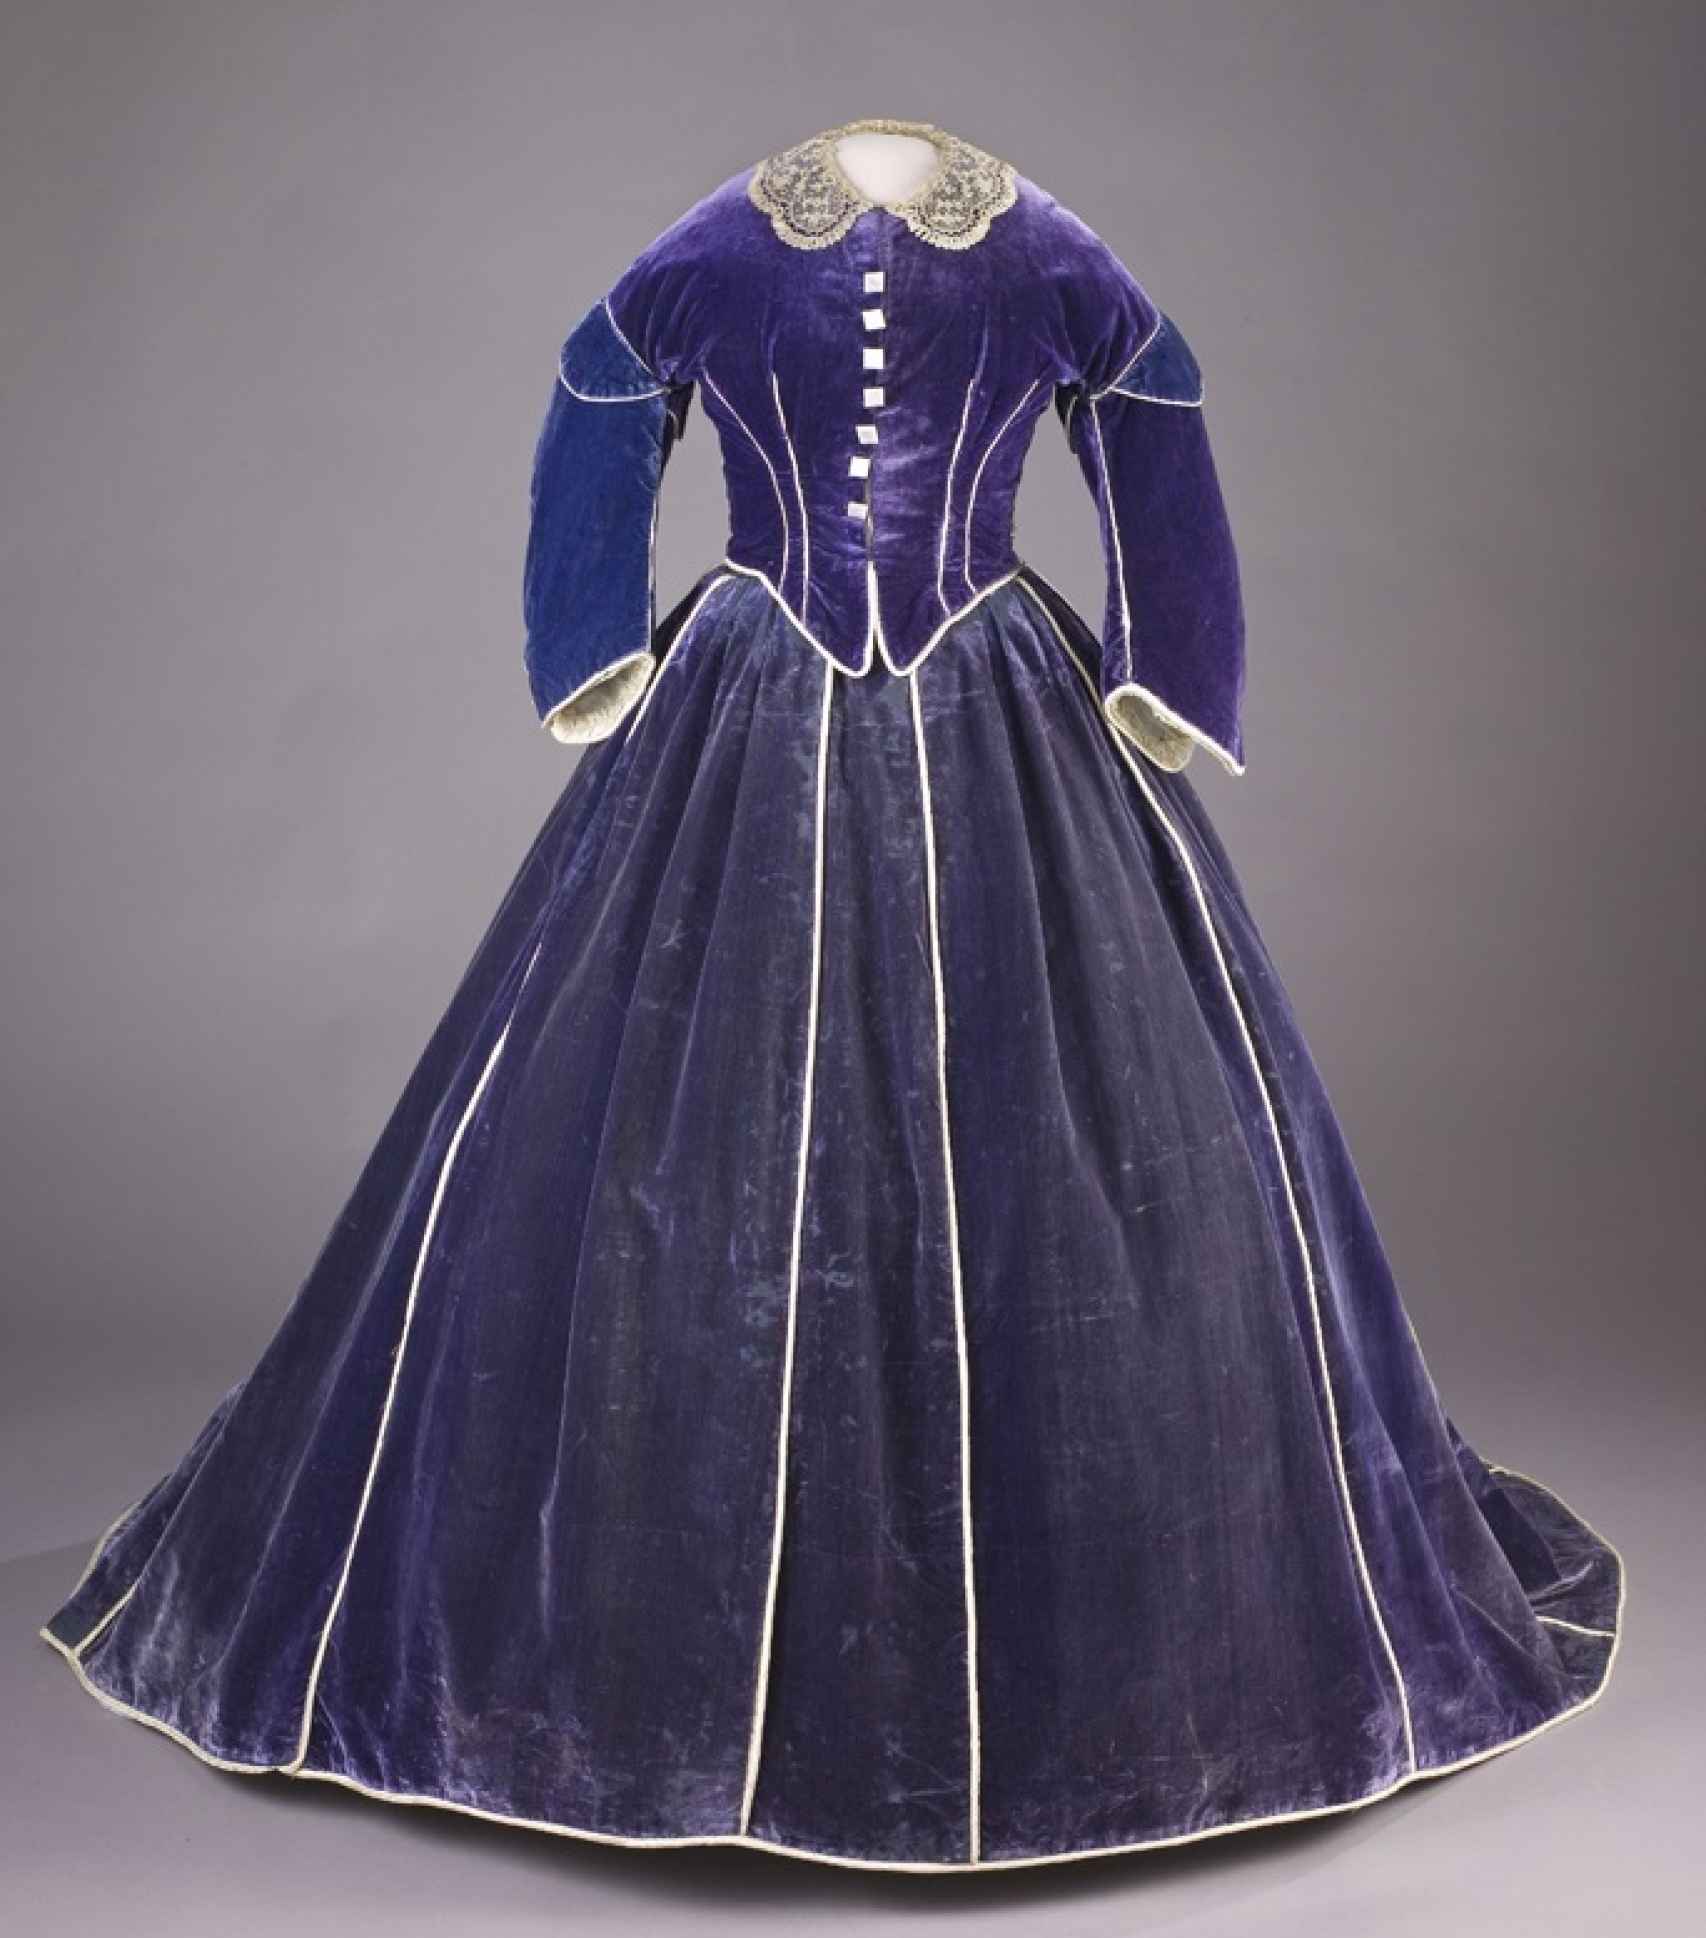 Vestido de Elizabeth Keckley que la señora Lincoln utilizó durante el invierno de 1861.